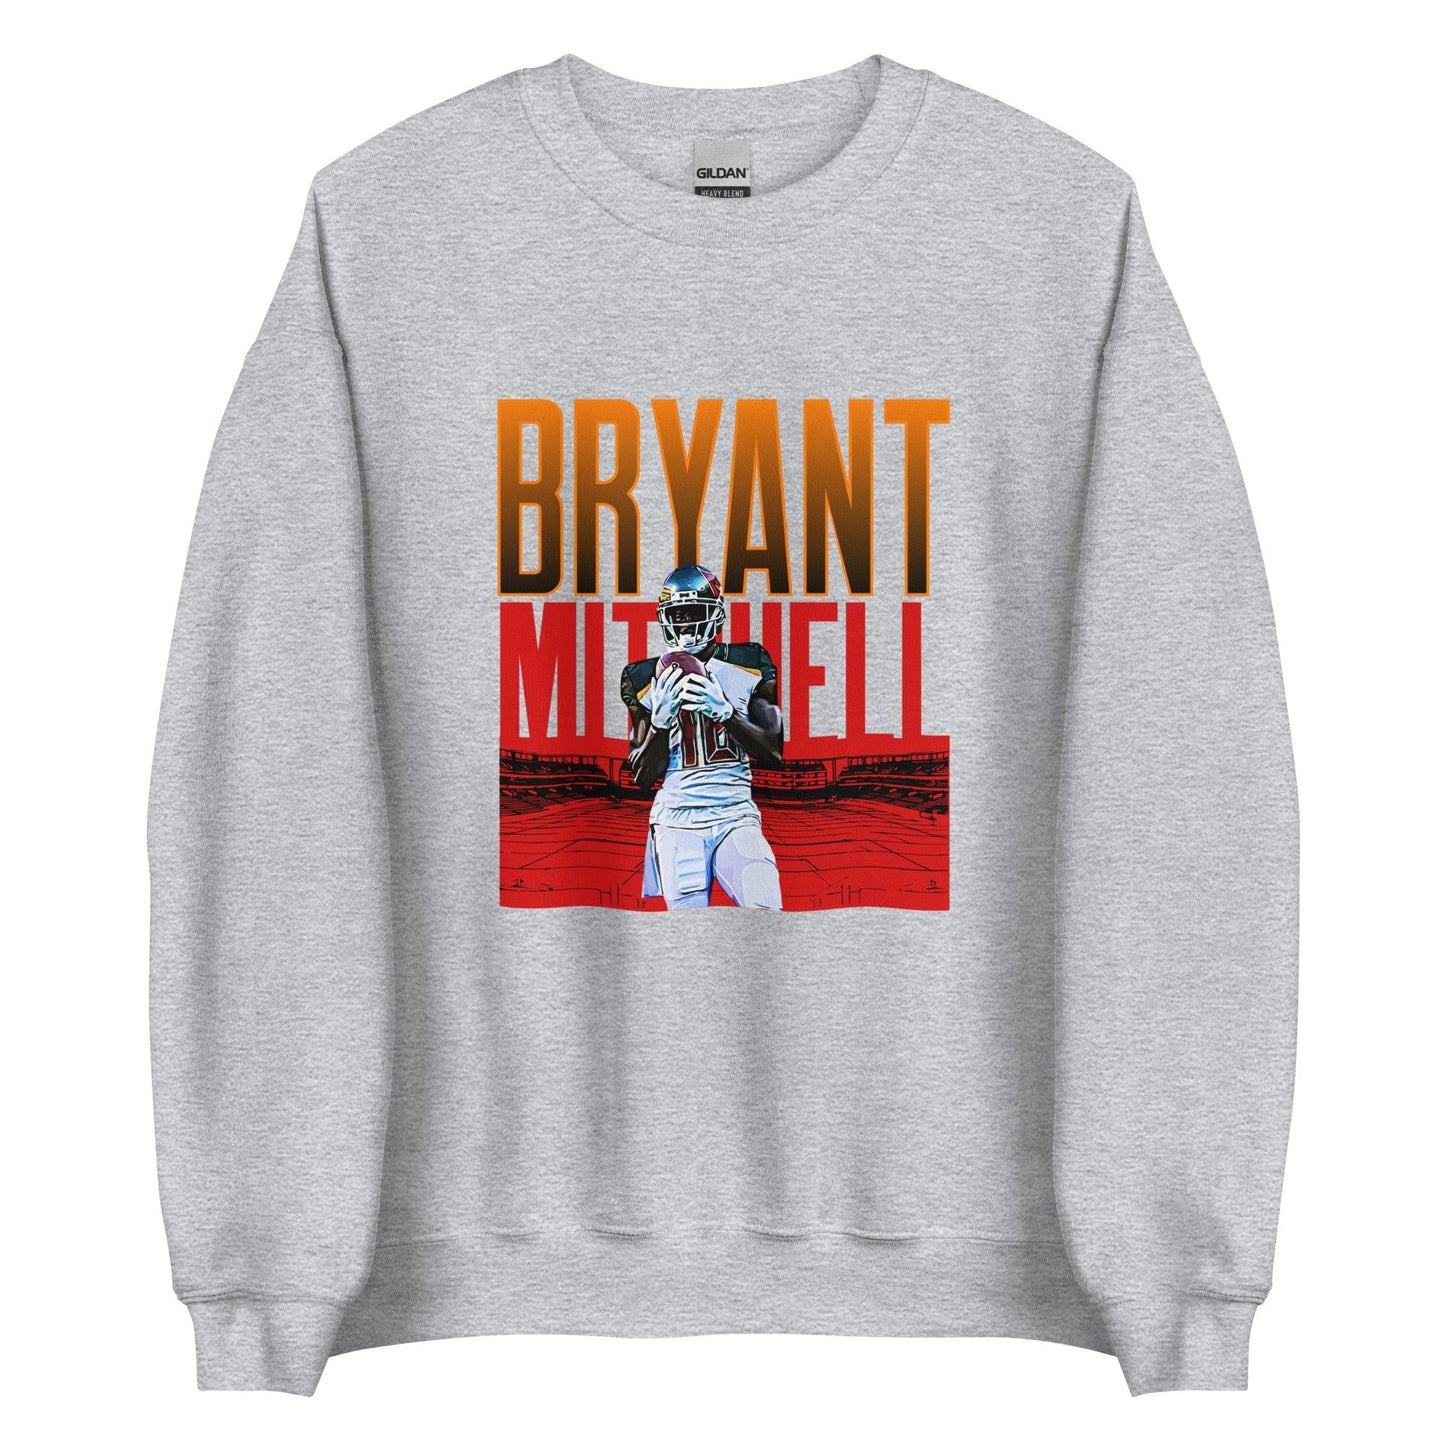 Bryant Mitchell "Gameday" Sweatshirt - Fan Arch